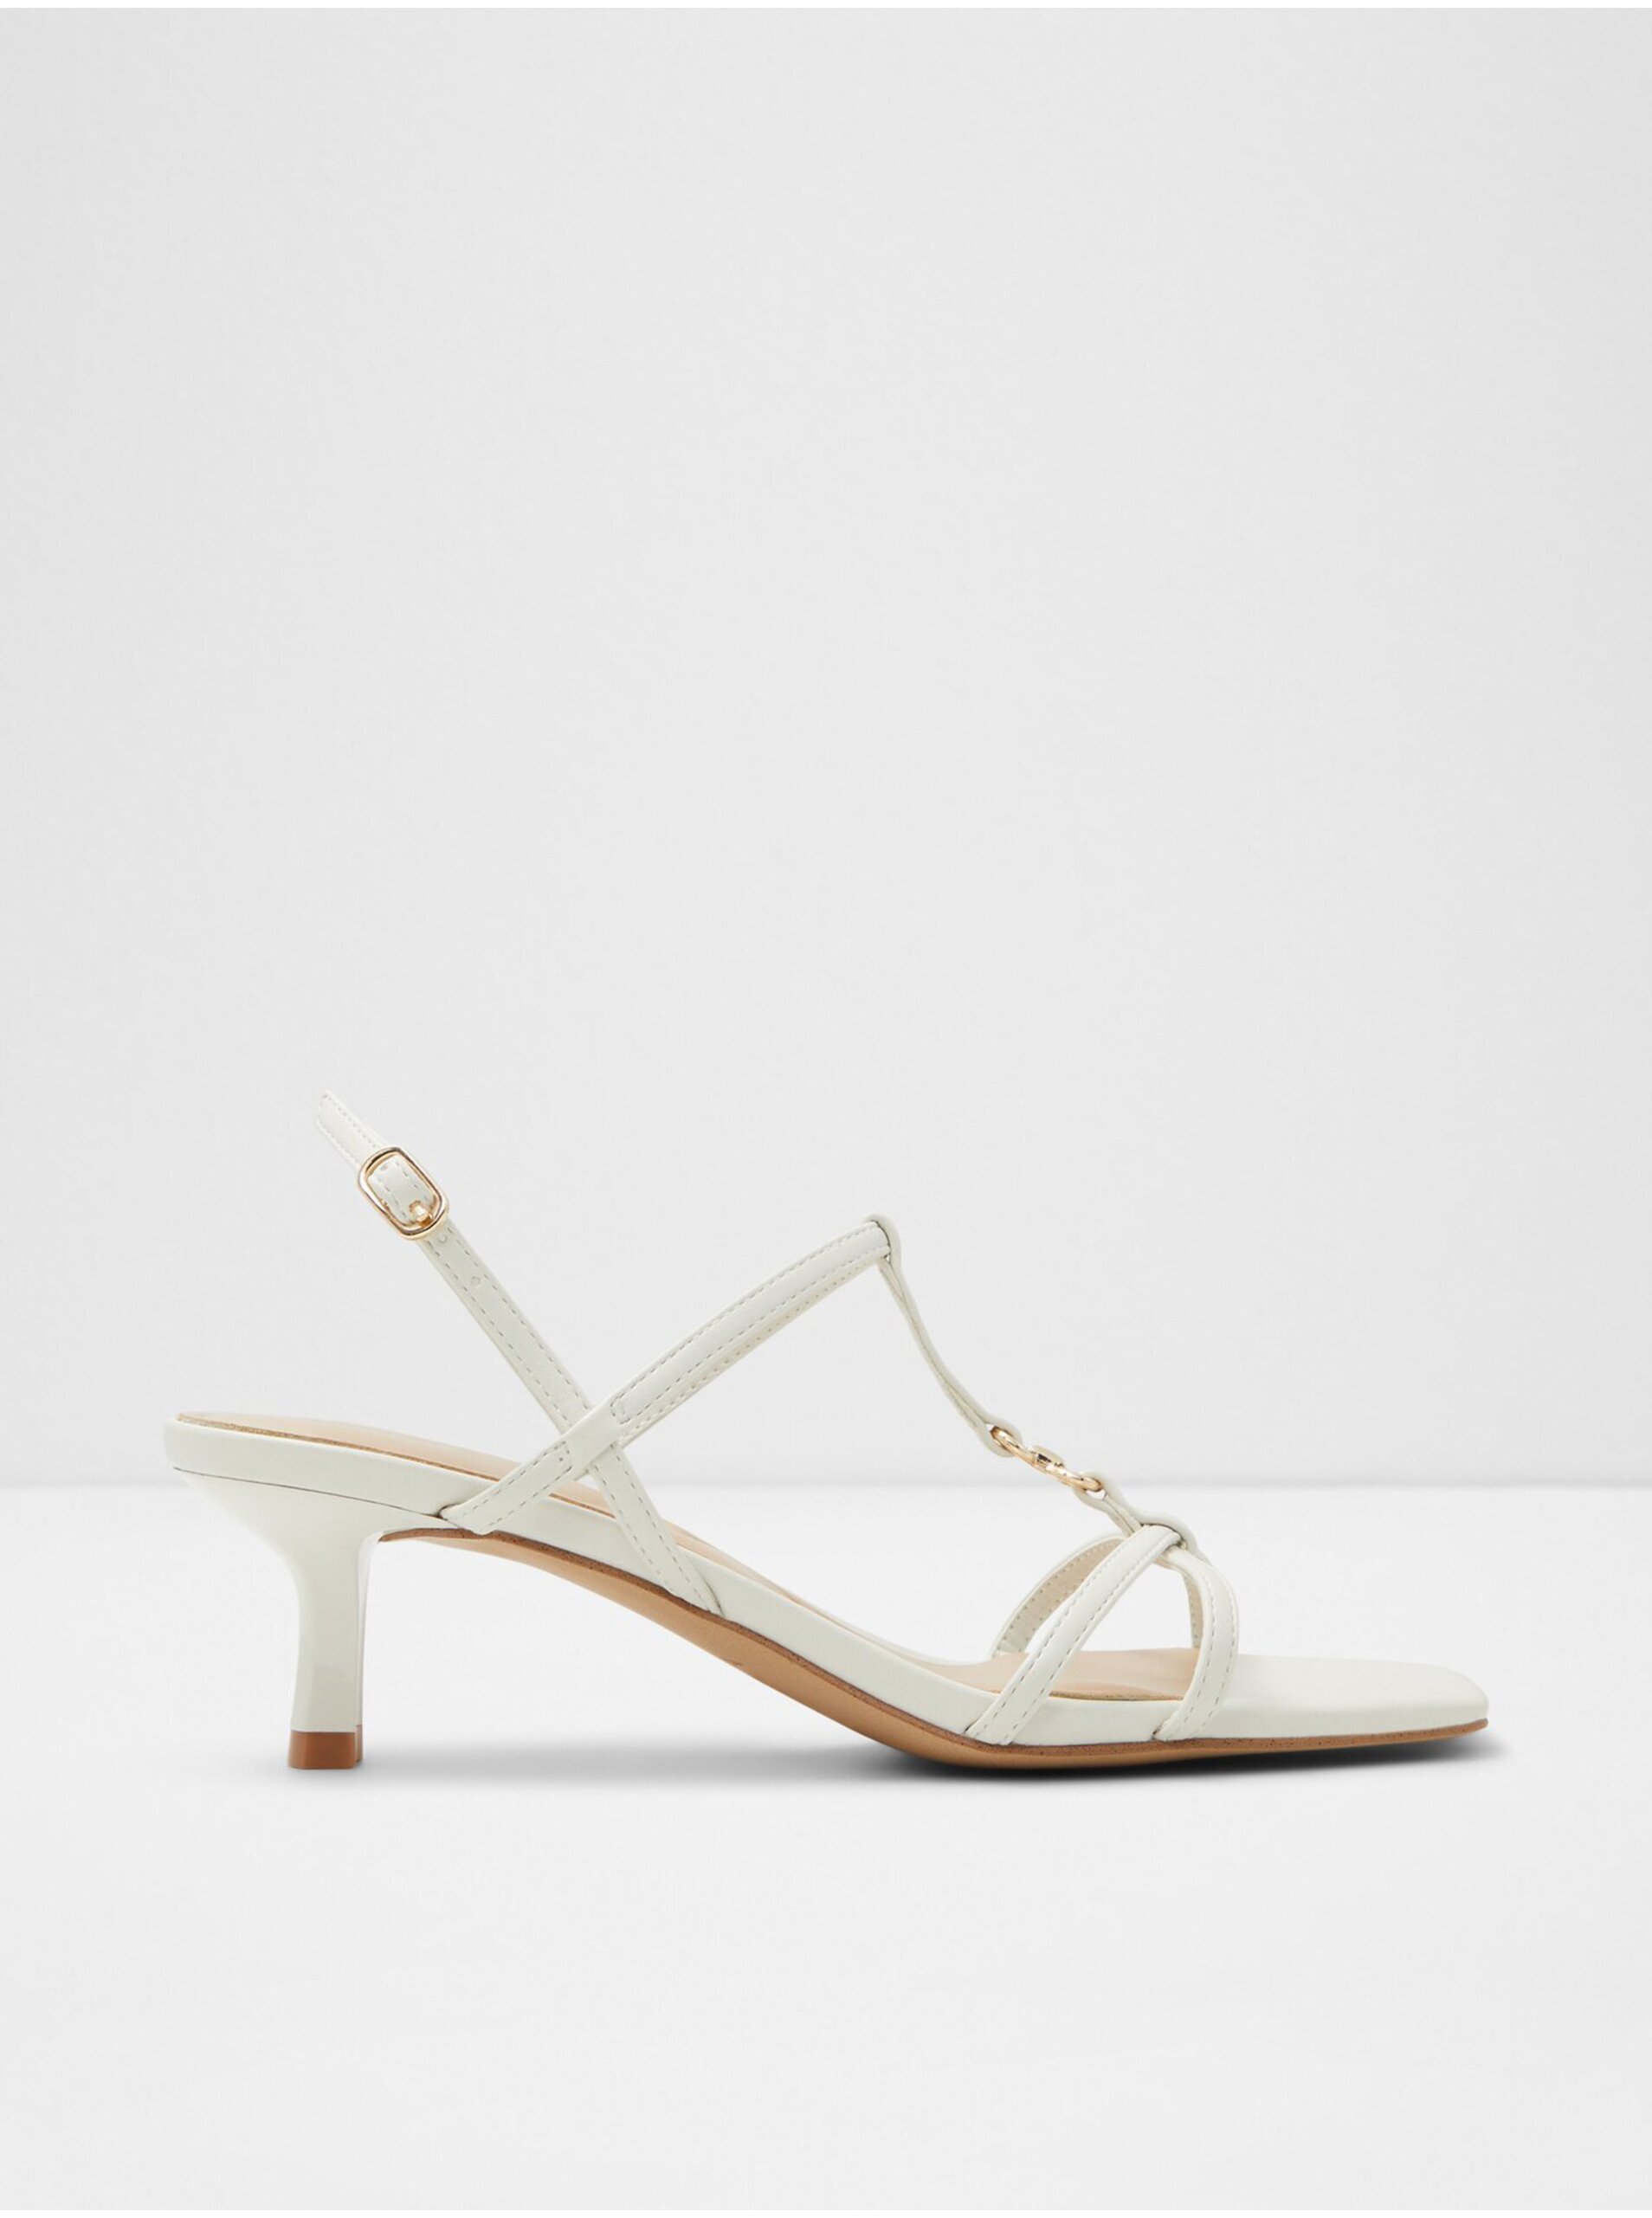 Lacno Biele dámske sandále na podpätku ALDO Josefina